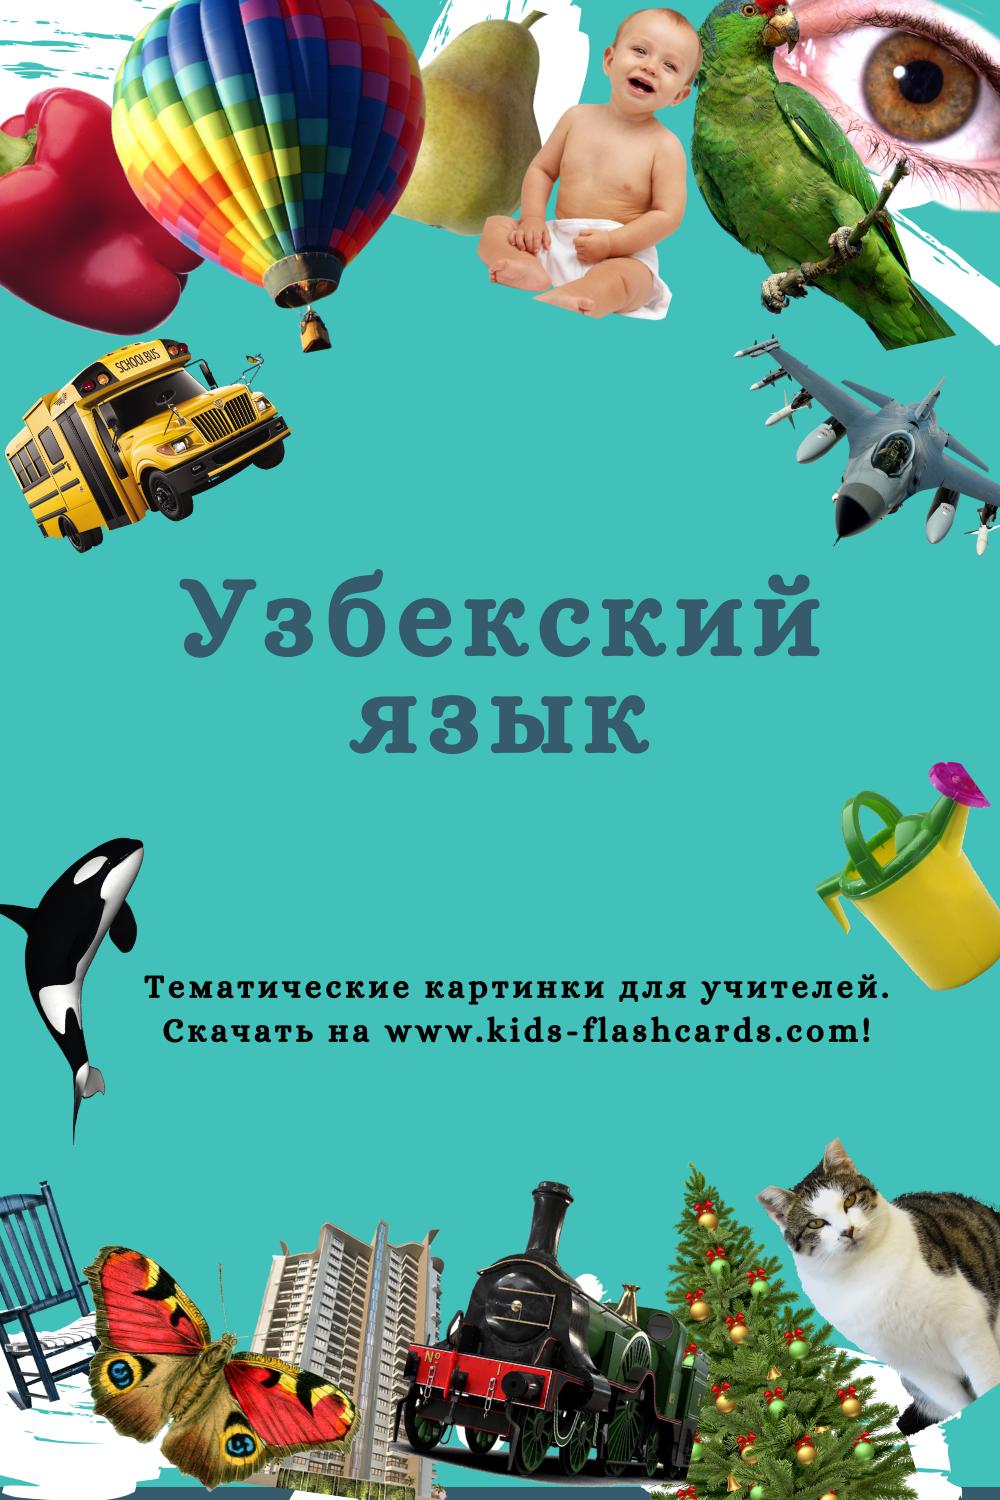 Узбекский язык - распечатки для детей